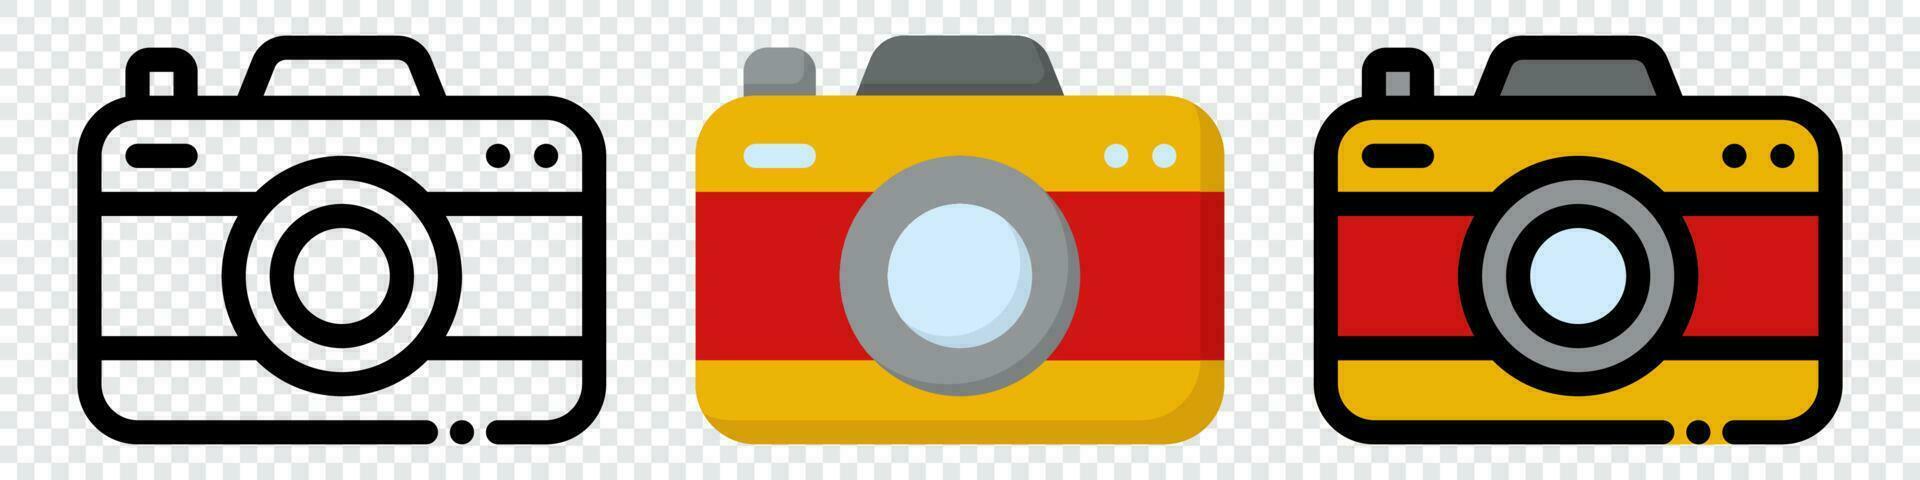 Camera icon set. Photo camera icon in different style. Photo camera in flat style. Photography symbol. Vector illustration